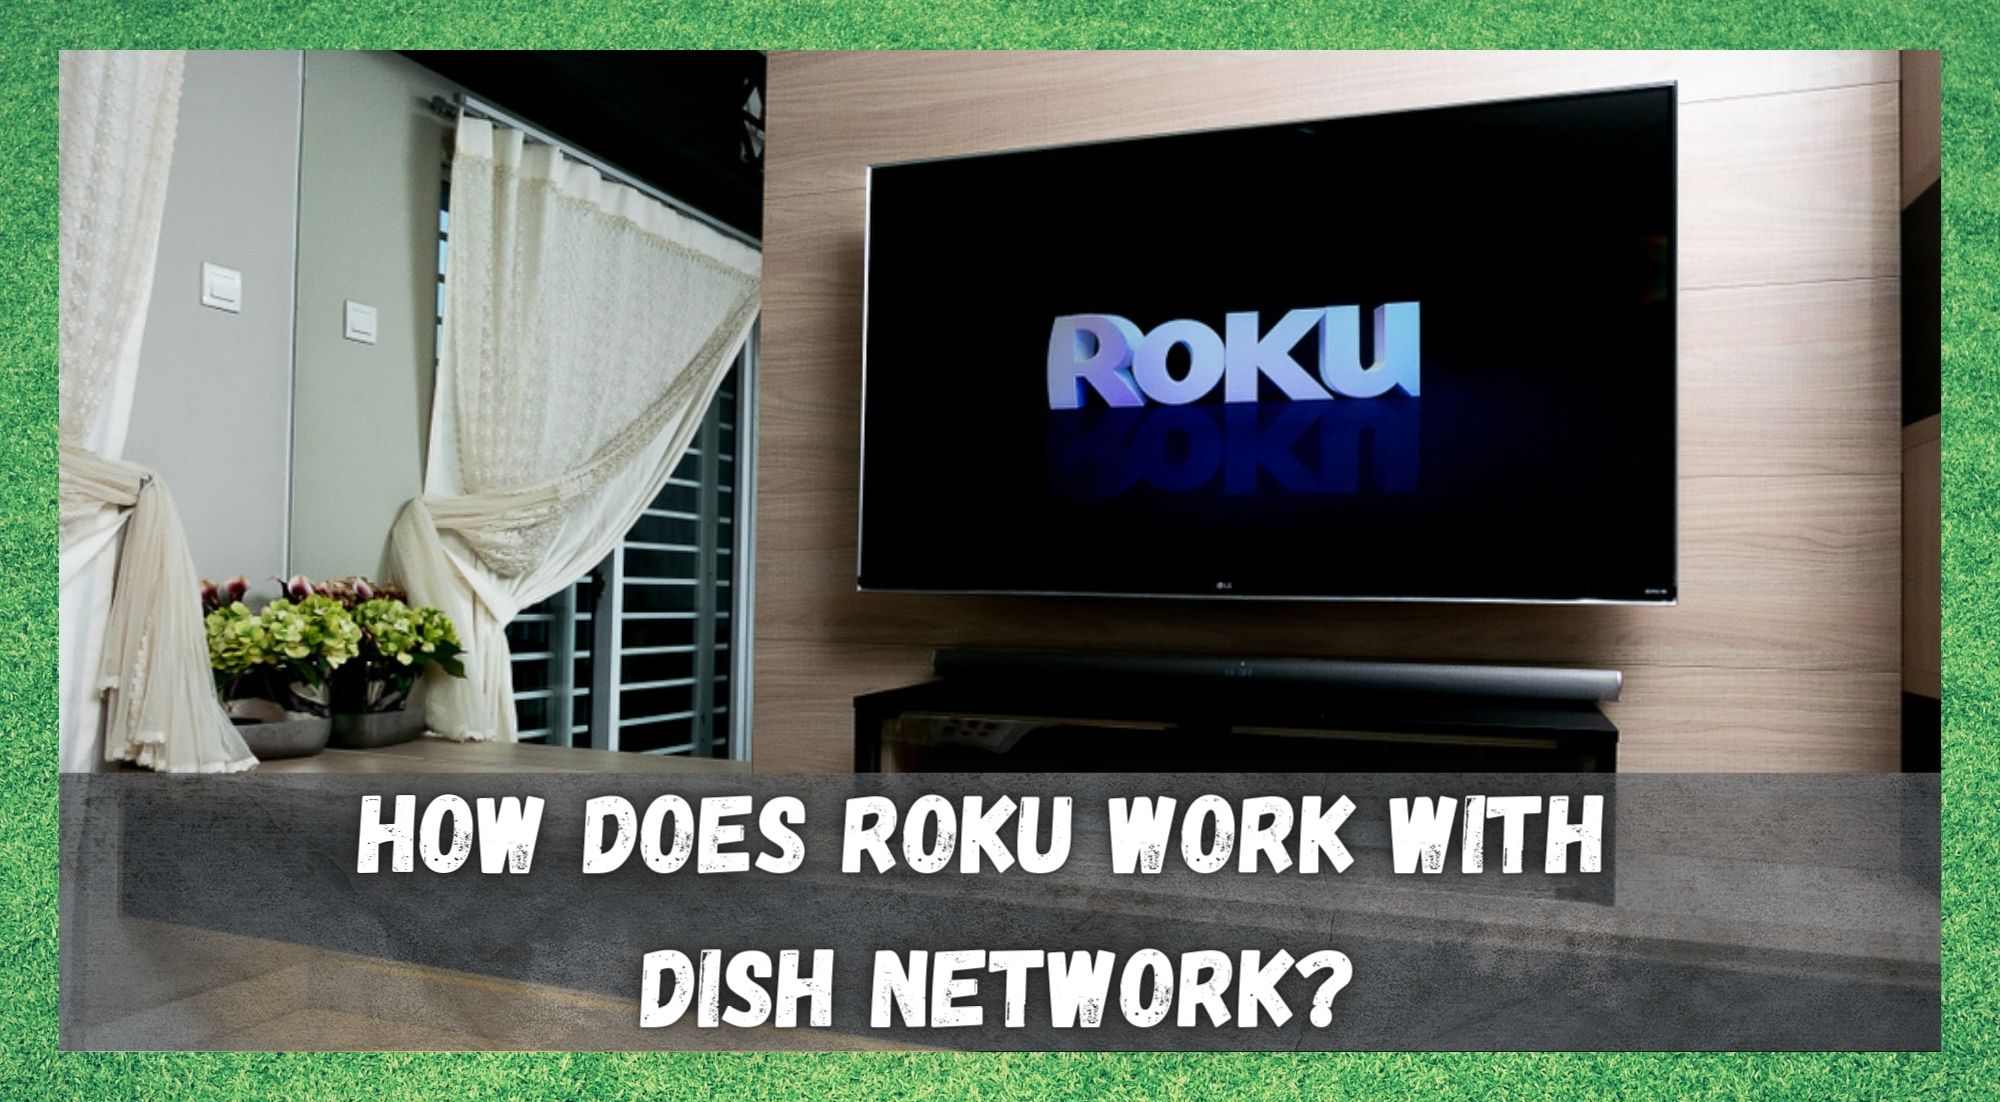 Roku သည် Dish Network နှင့်မည်သို့အလုပ်လုပ်သနည်း။